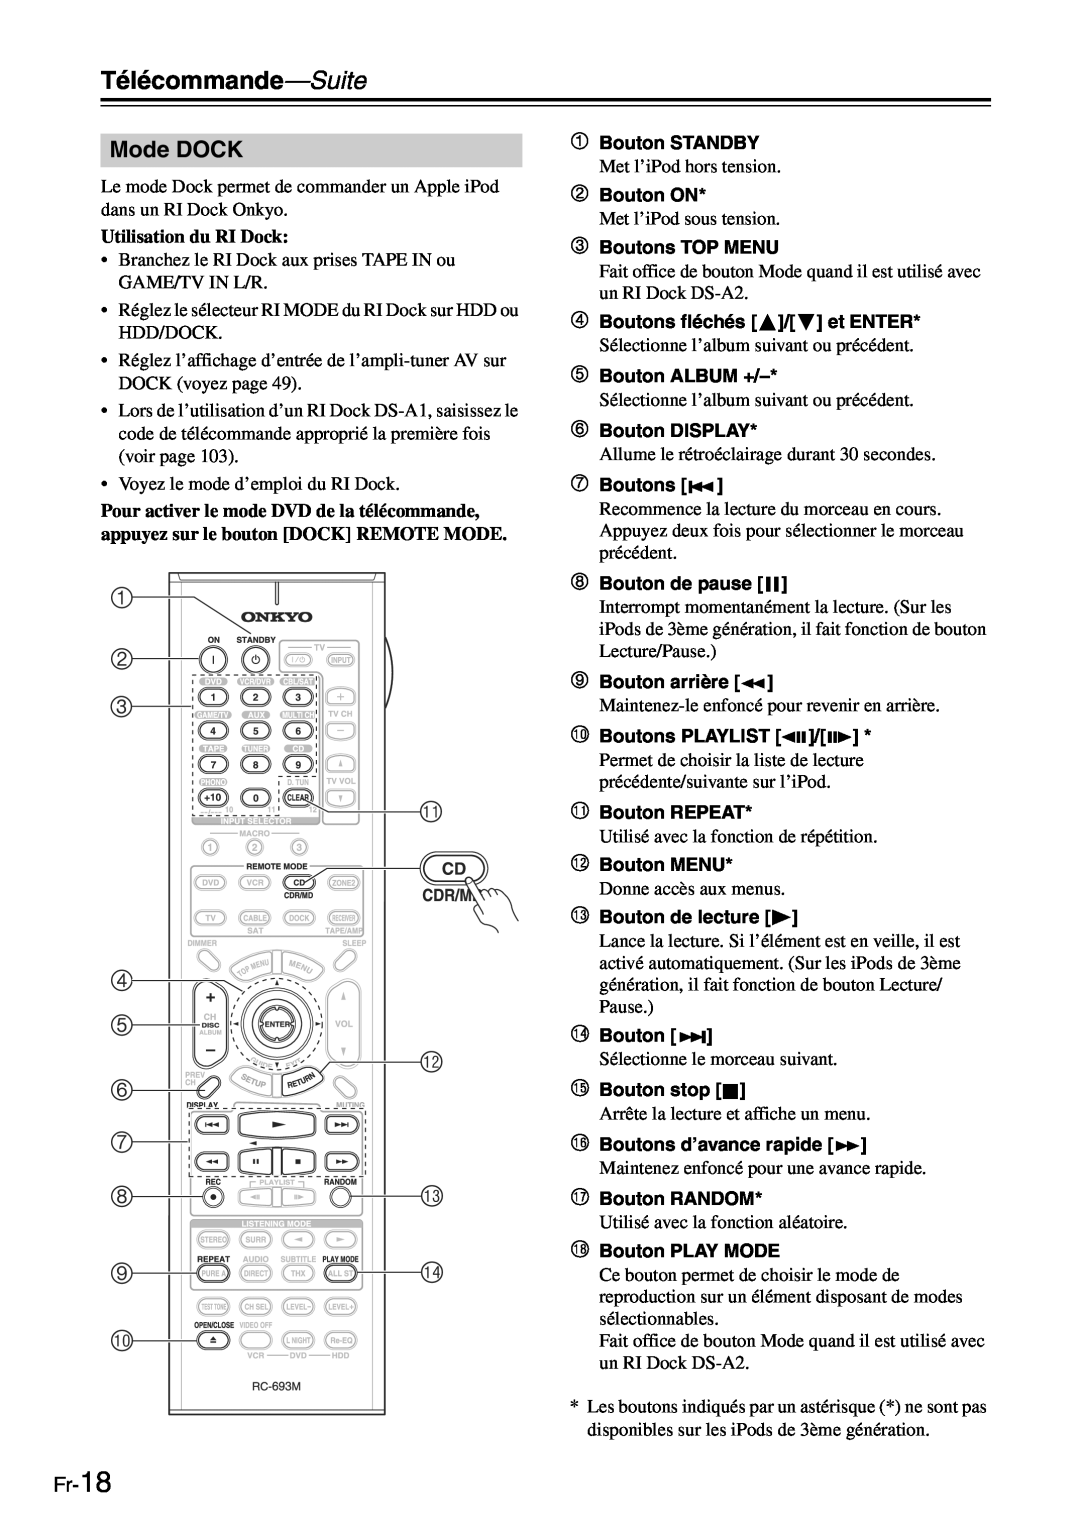 Onkyo TX-SR705 manual Mode DOCK, Fr-18 